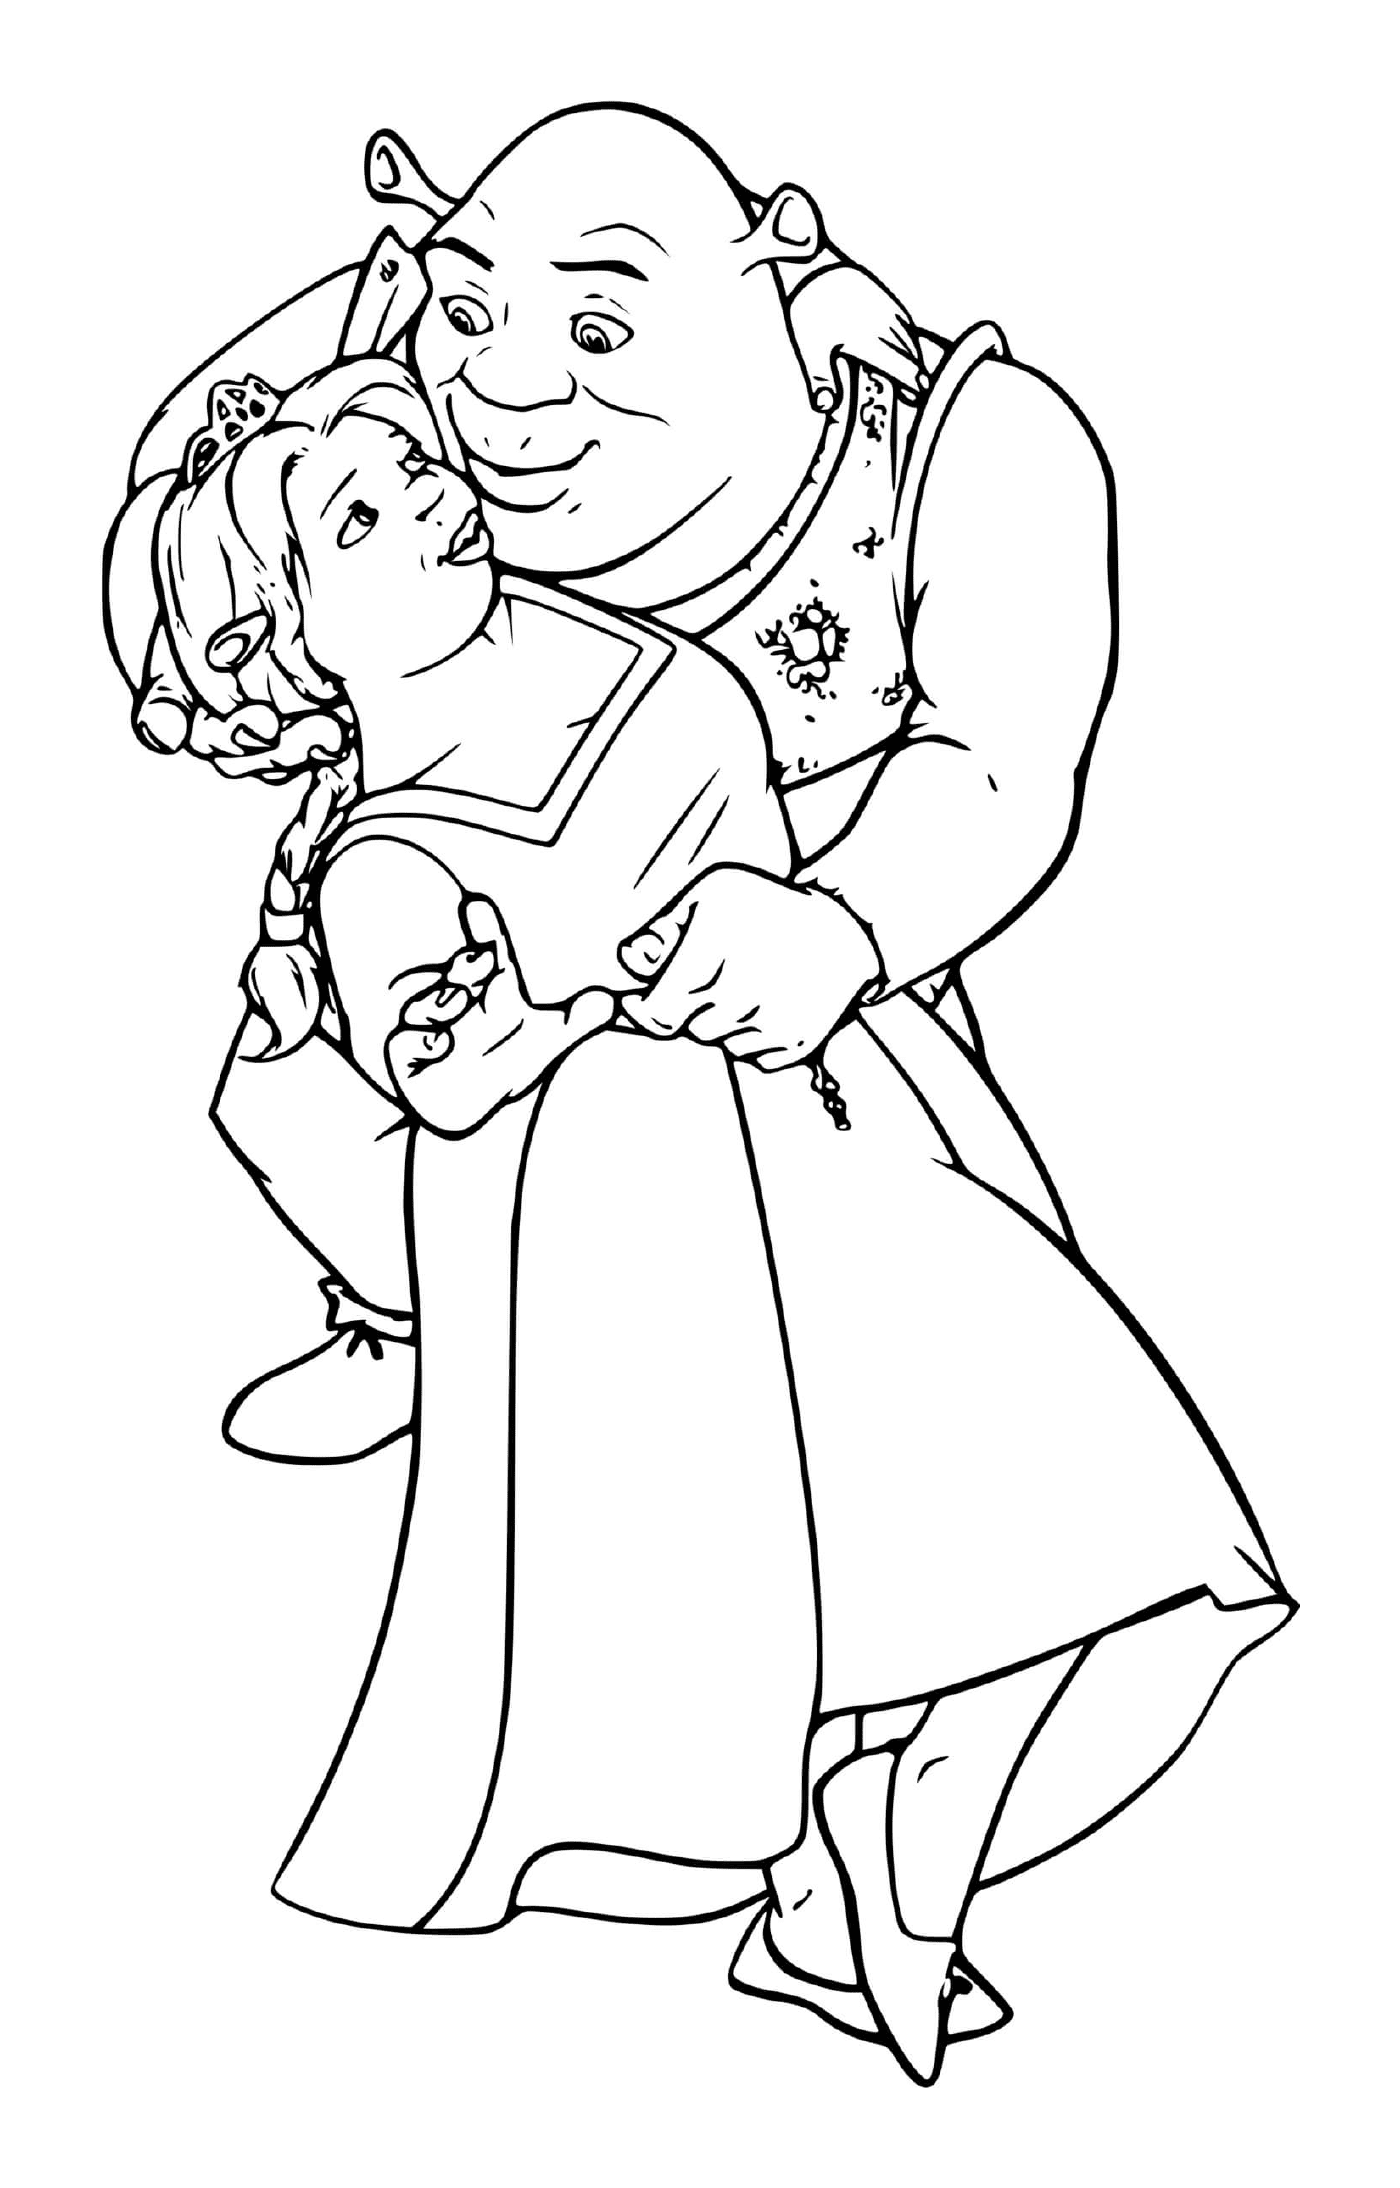  Un viejo sosteniendo a una niña en sus brazos 